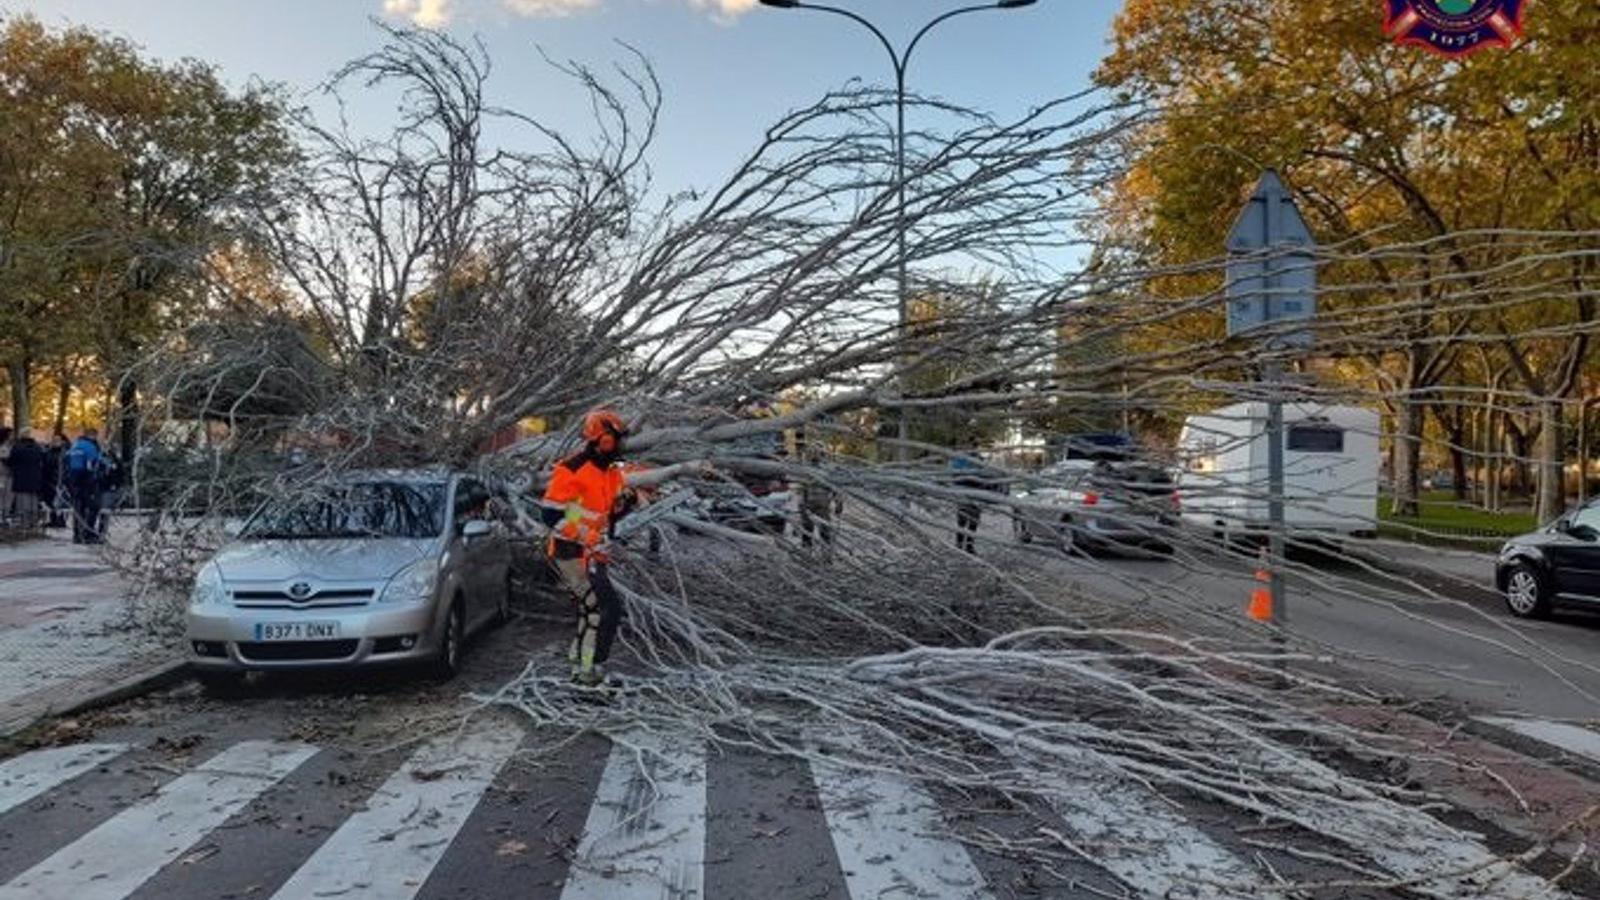  Cae un árbol de grandes dimensiones sobre dos vehículos en Alcorcón